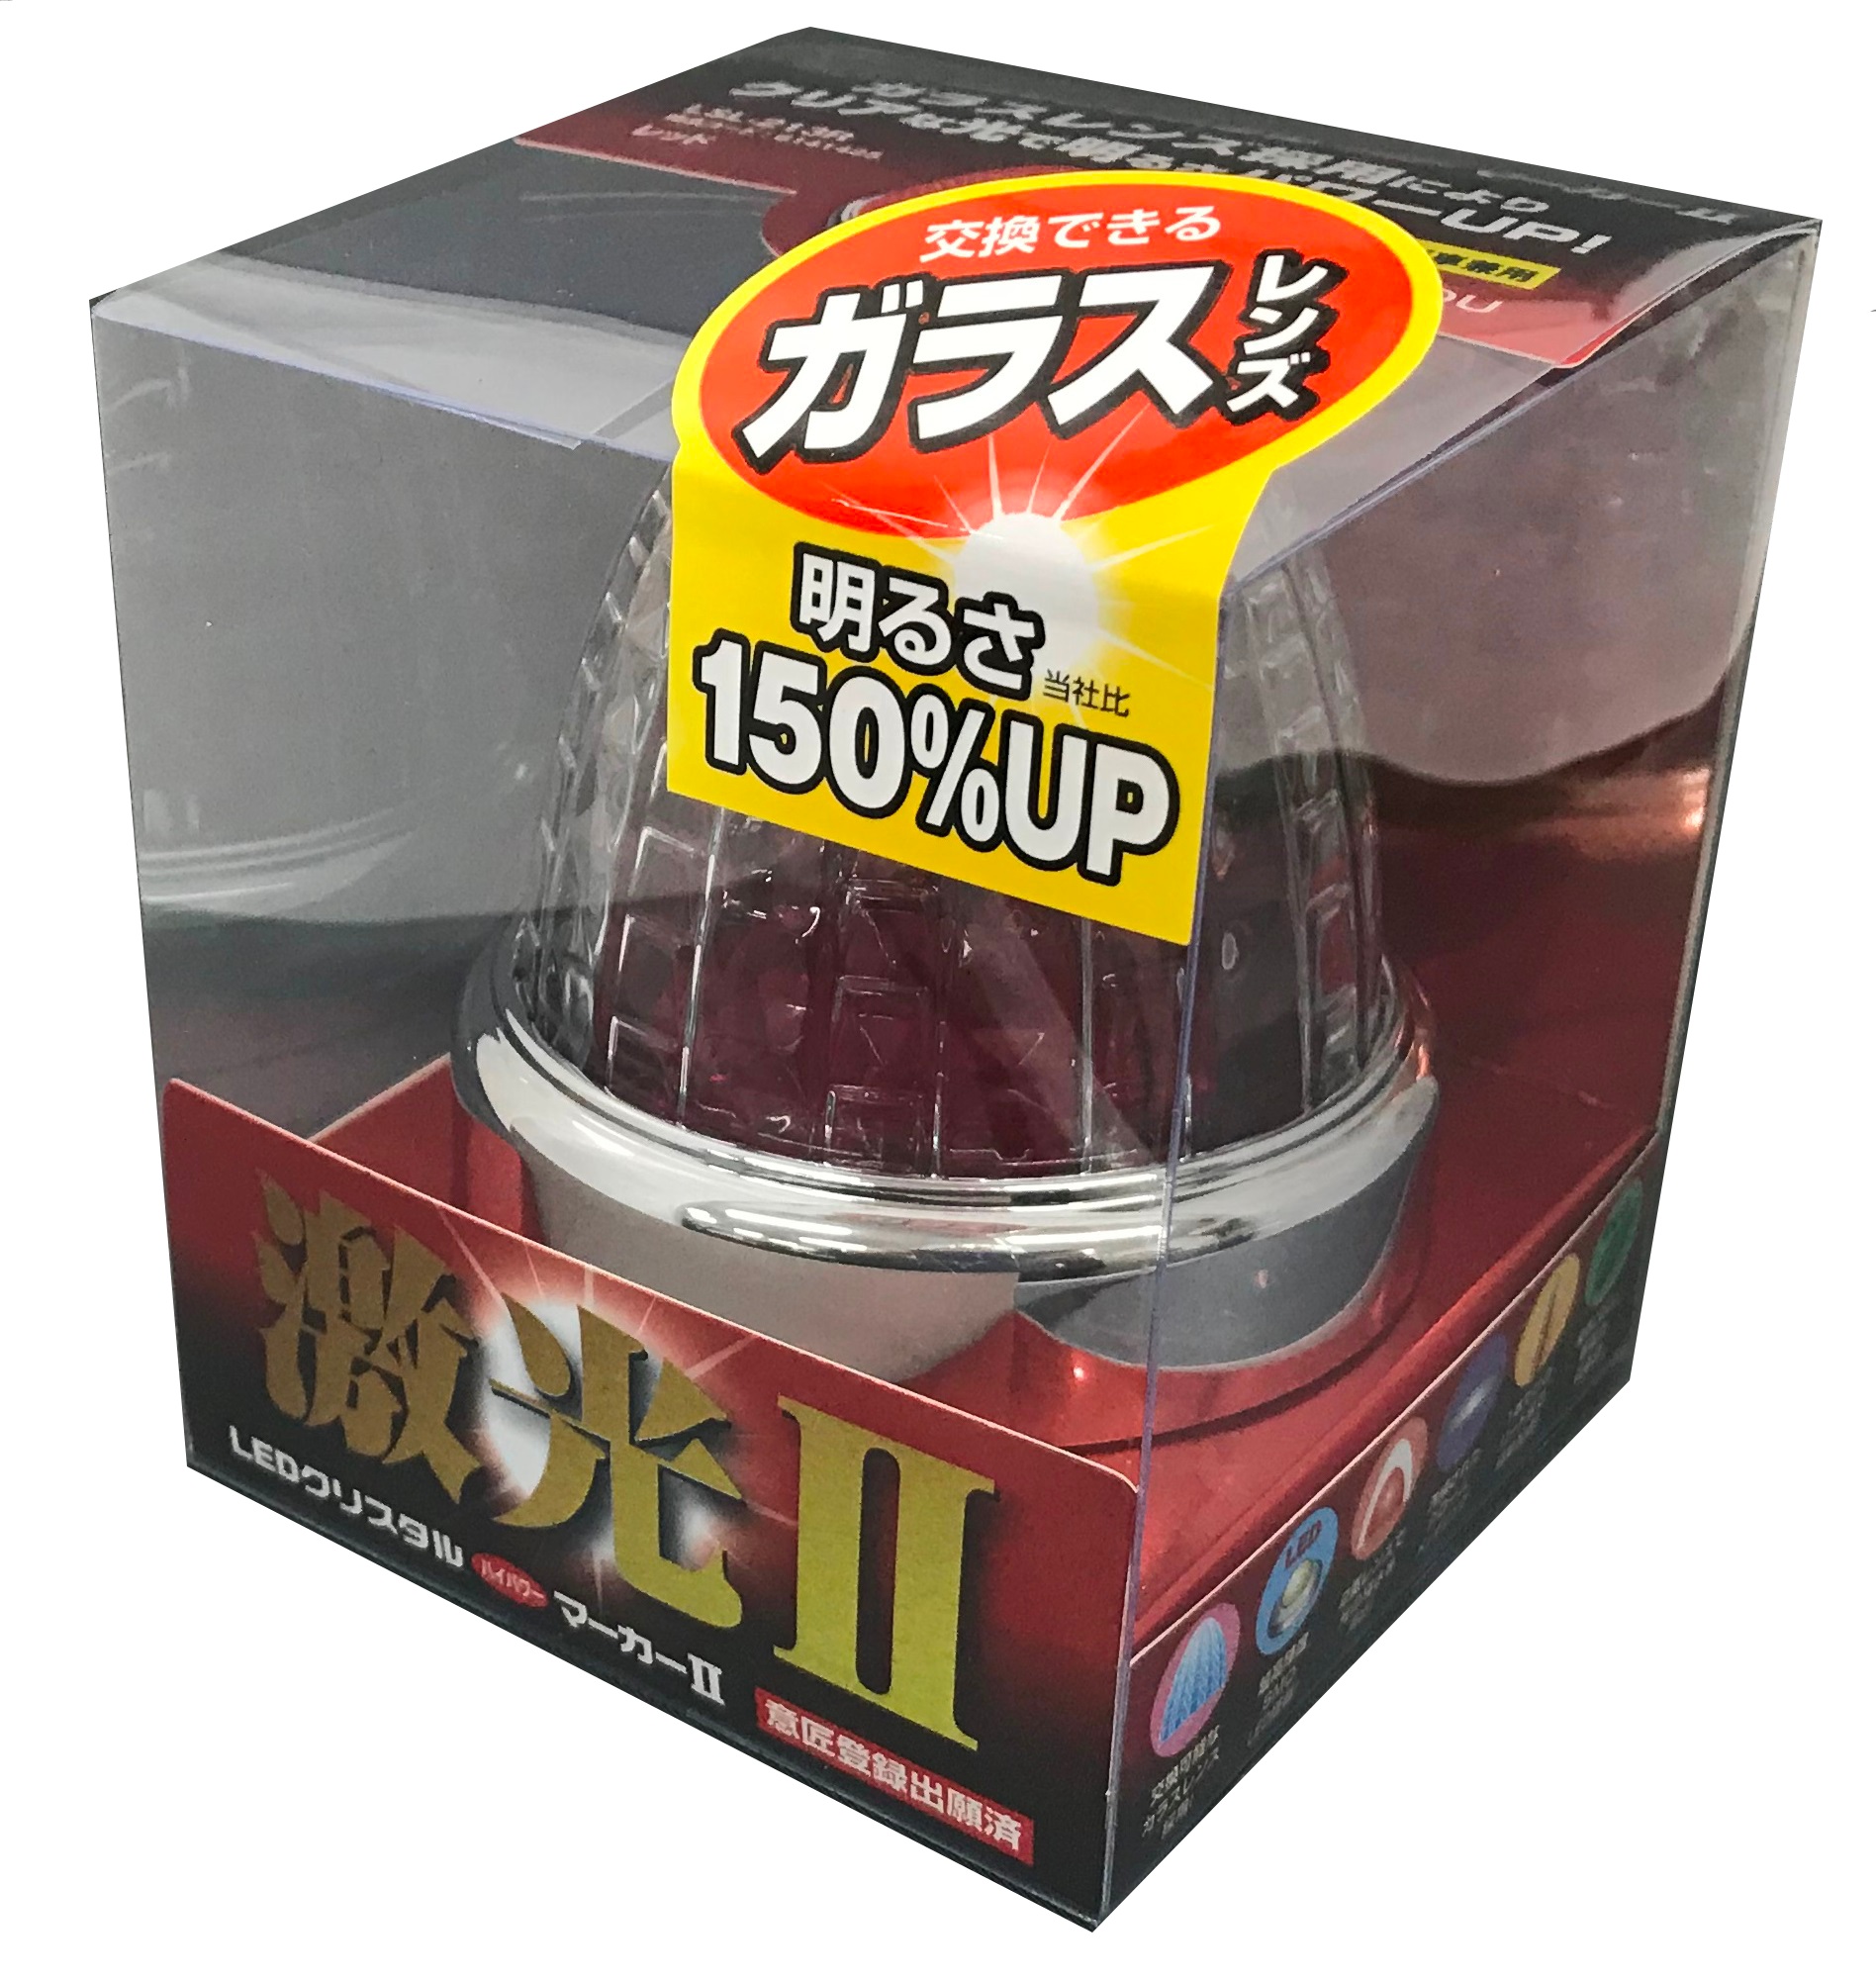 9728円 【最安値】 LSL-203R LEDクリスタルハイパワーマーカー激光 レッド 6個